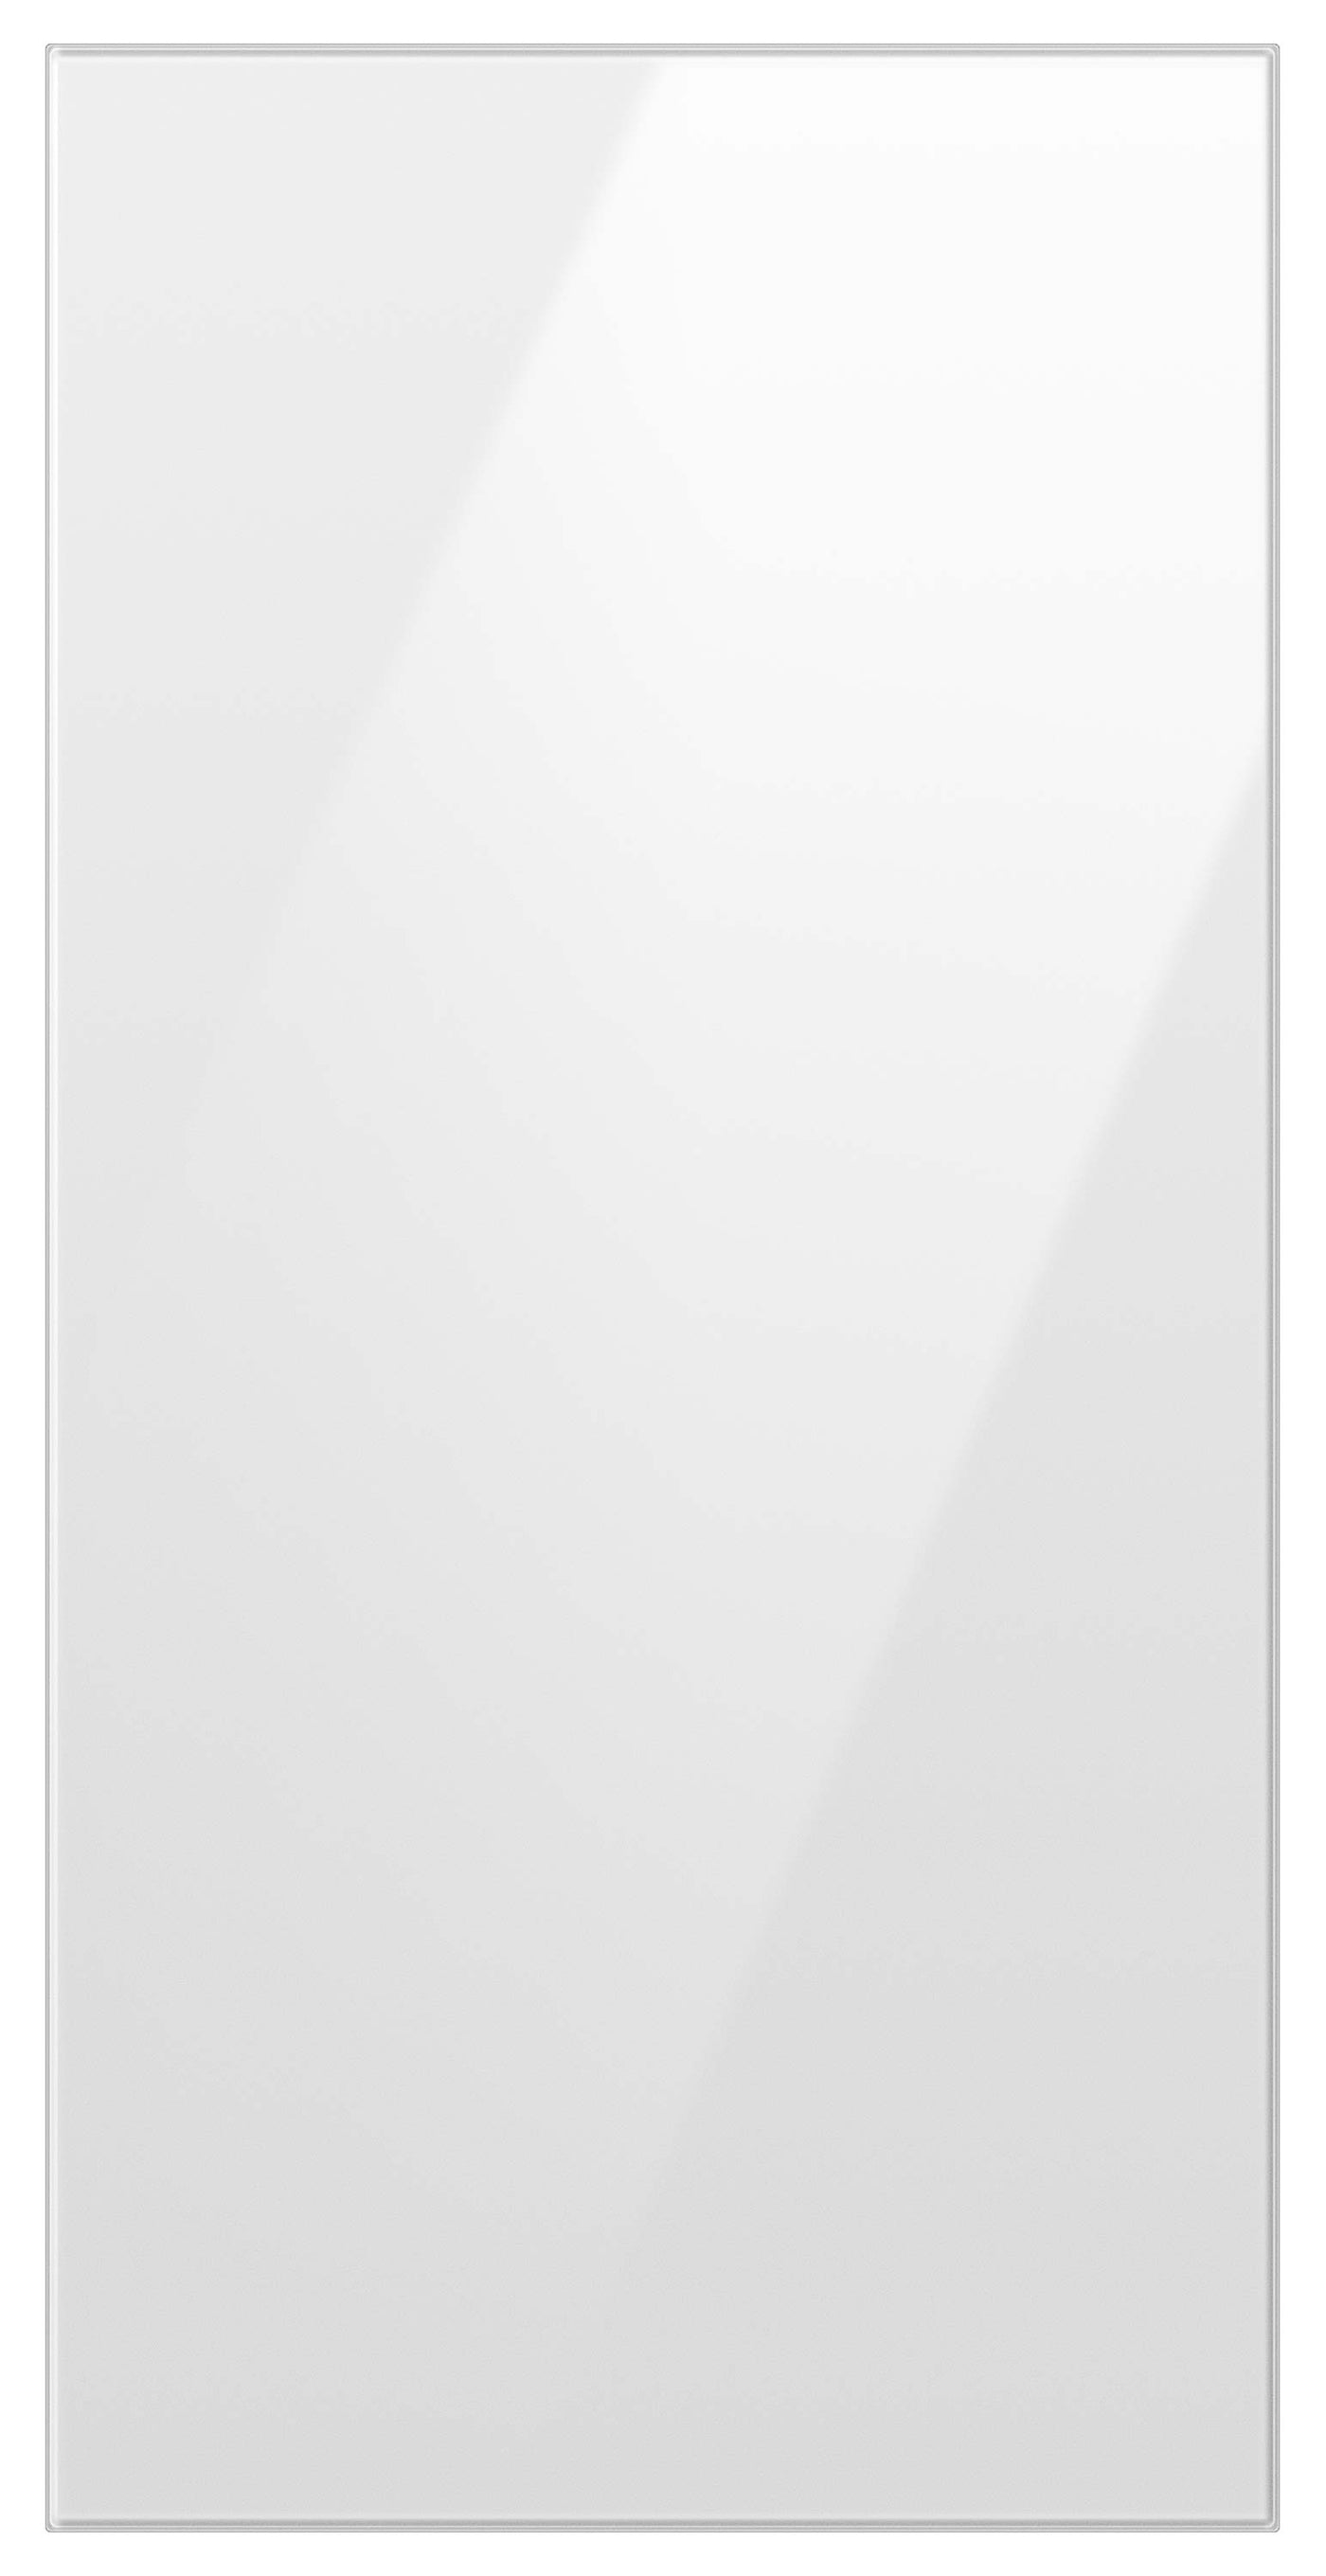 Samsung BESPOKE White Glass Top Door Panel for 4-Door Refrigerator - RA-F18DU412/AA